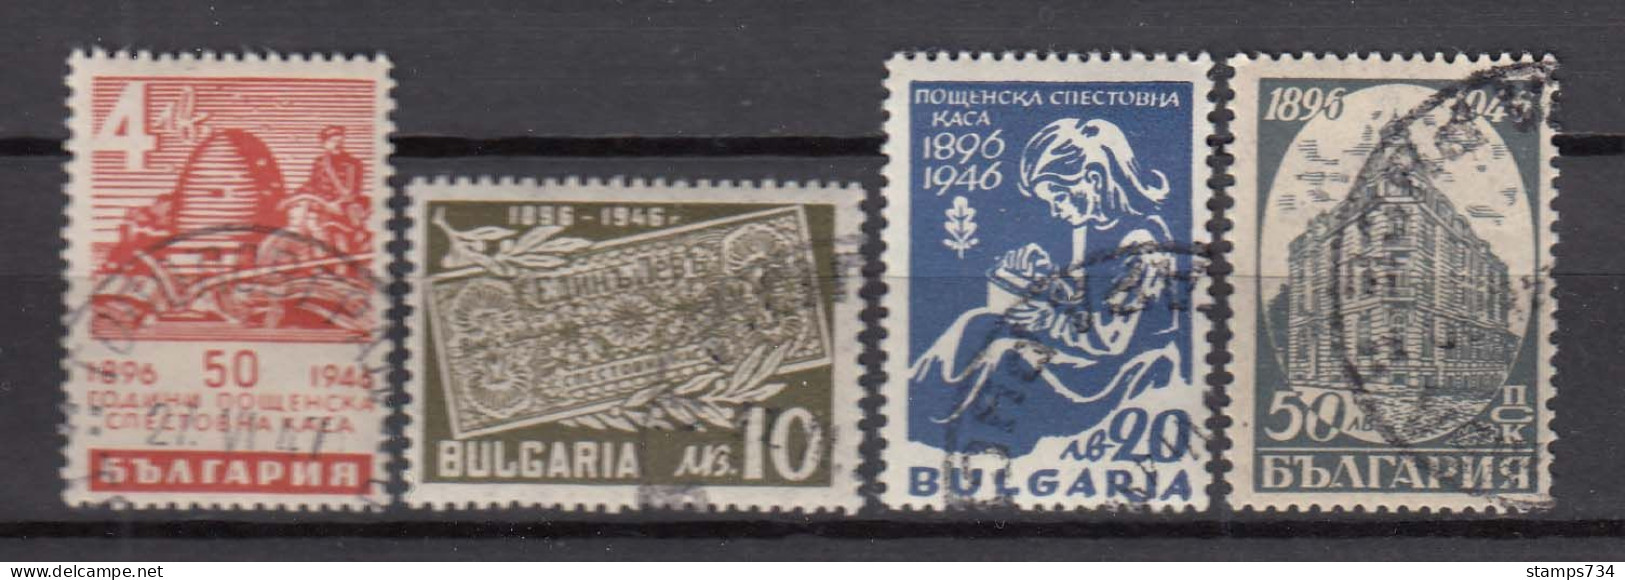 Bulgaria 1946 - 50 Jahre Bulgarische Postsparkasse, Mi-Nr. 524/27, Used (O) - Gebraucht